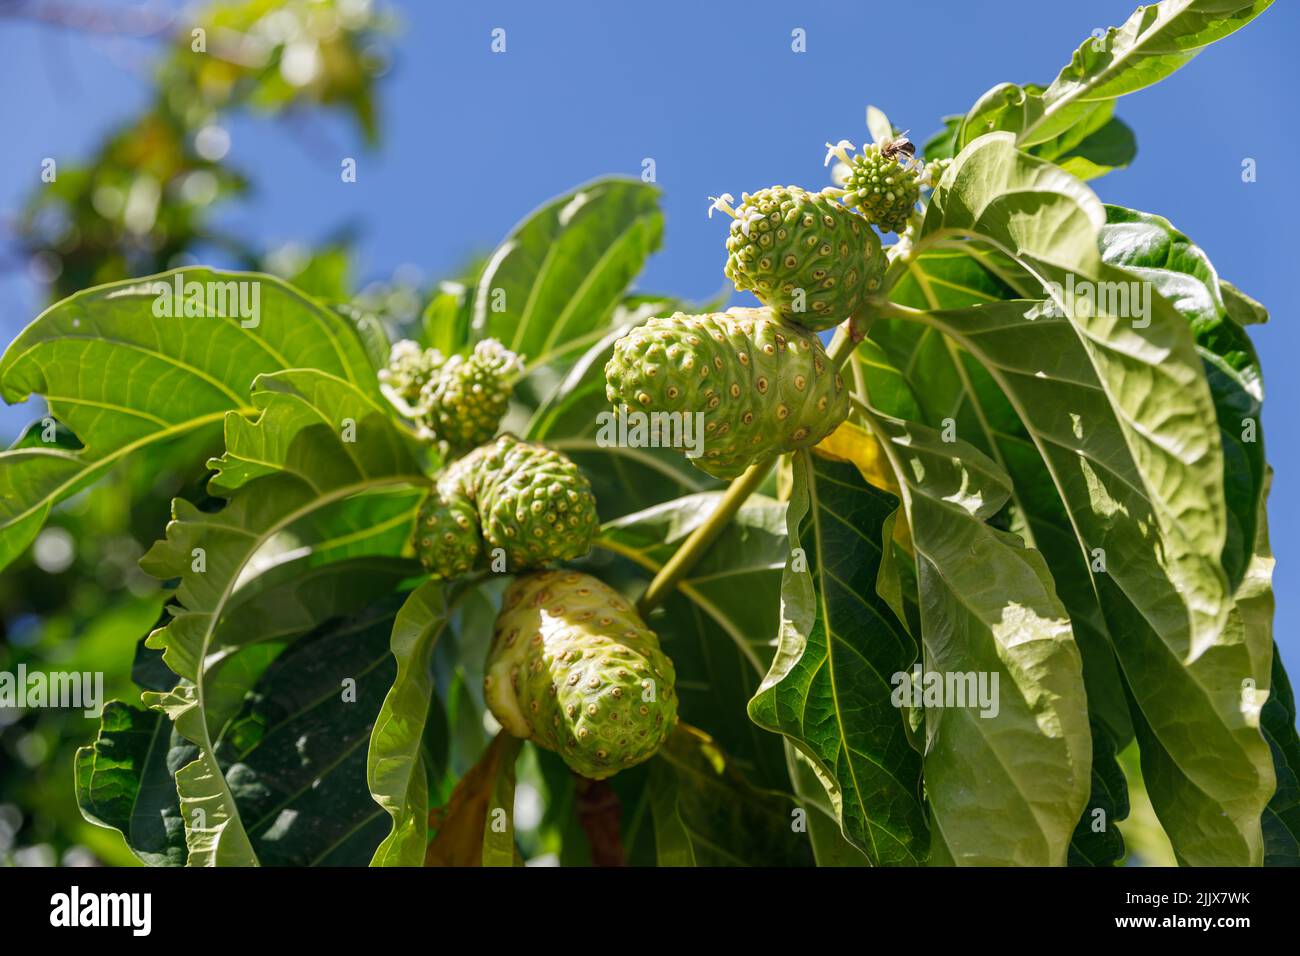 Albero di Noni, Morinda citrifolia. Un frutto medicinale con proprietà uniche. Foto Stock